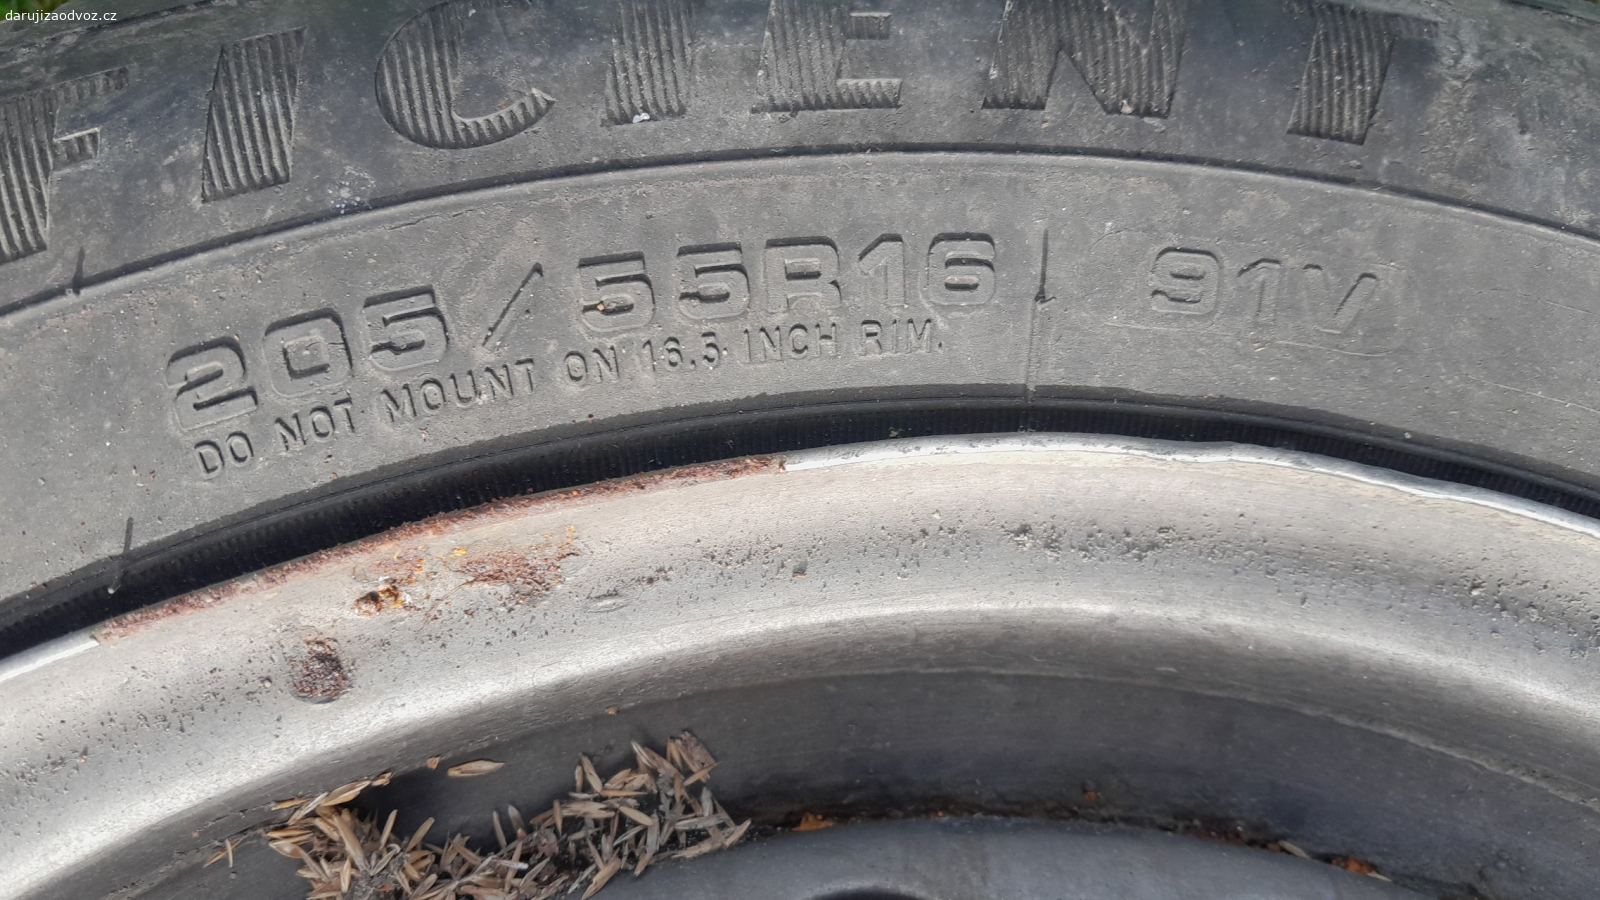 disky a pneu 205/55R16 91V. staré pneu s diskama  sundane před lety z Ford mondeo